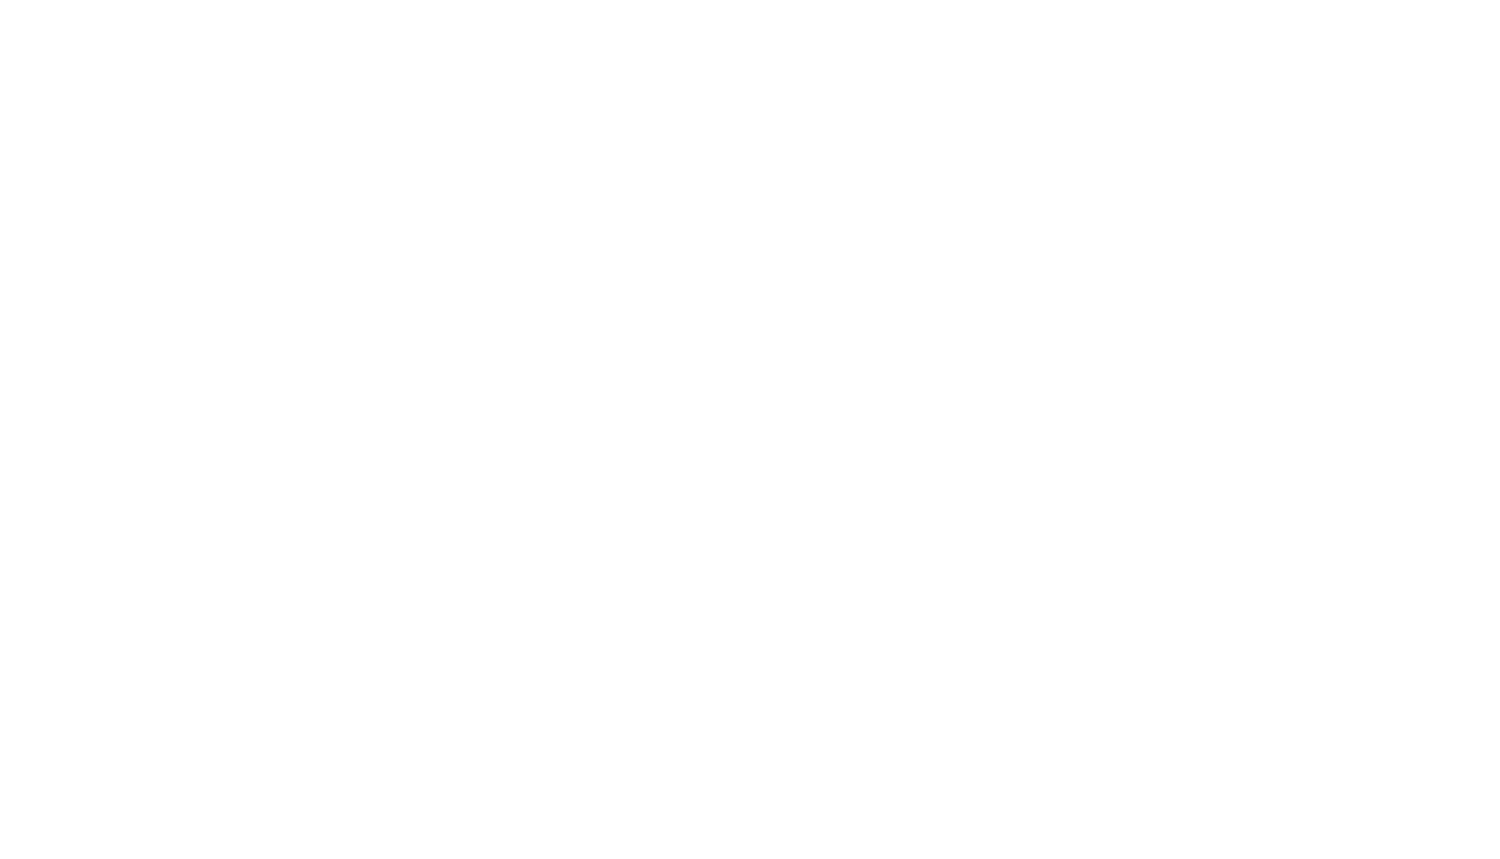 Peter E. Dooley